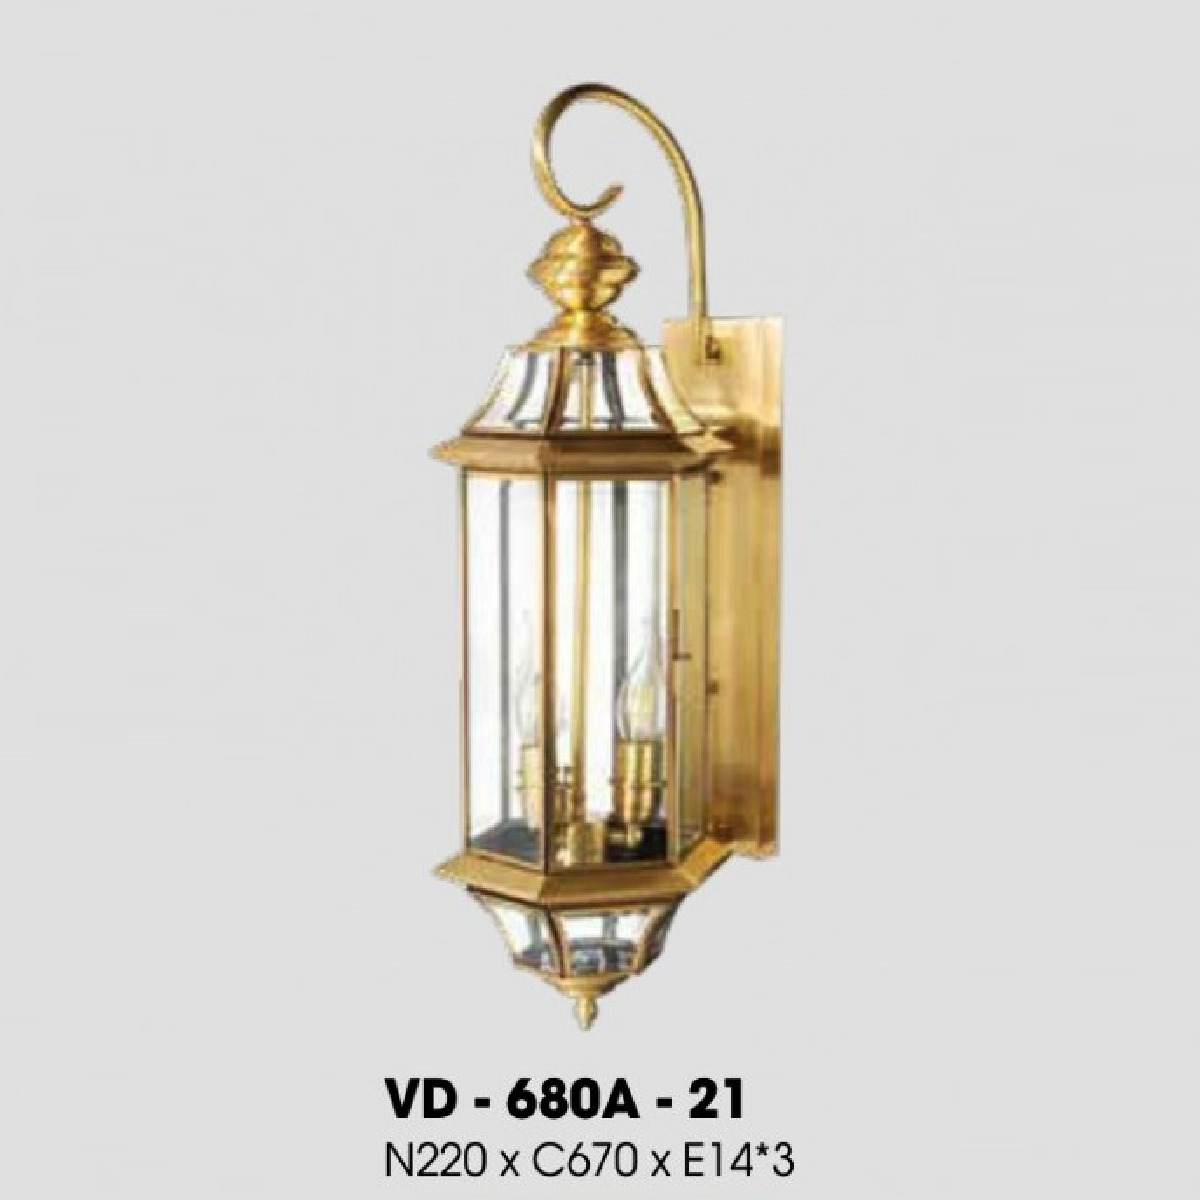 LH - VD - 680A-21: Đèn gắn tường ngoài trời xi mạ đồng - KT: W220mm x H670mm - Bóng đèn E14 x 3 bóng